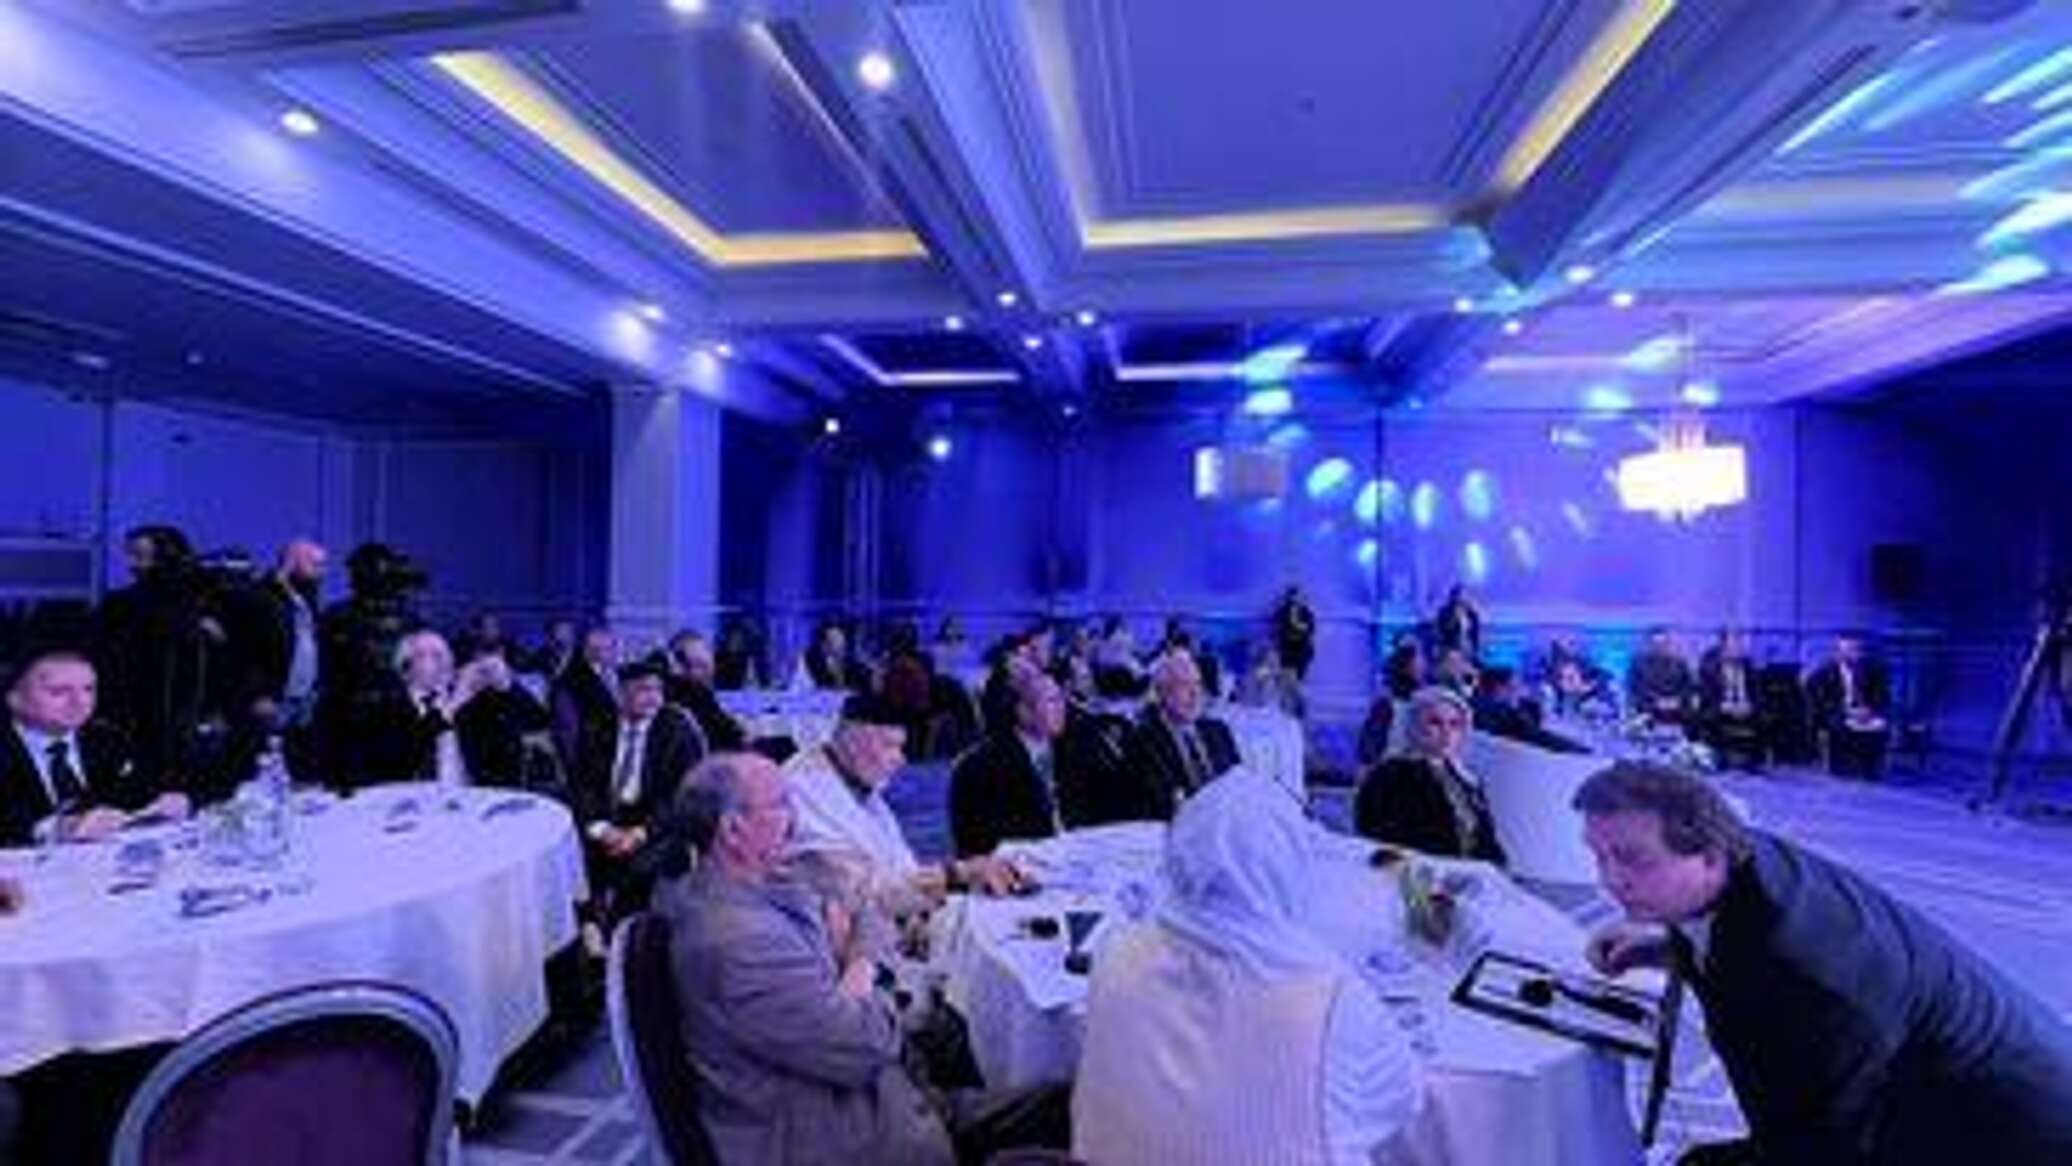 تونس تستضيف "الملتقى الدولي حول الاستقرار في ليبيا" بمشاركة ليبية ودولية واسعة